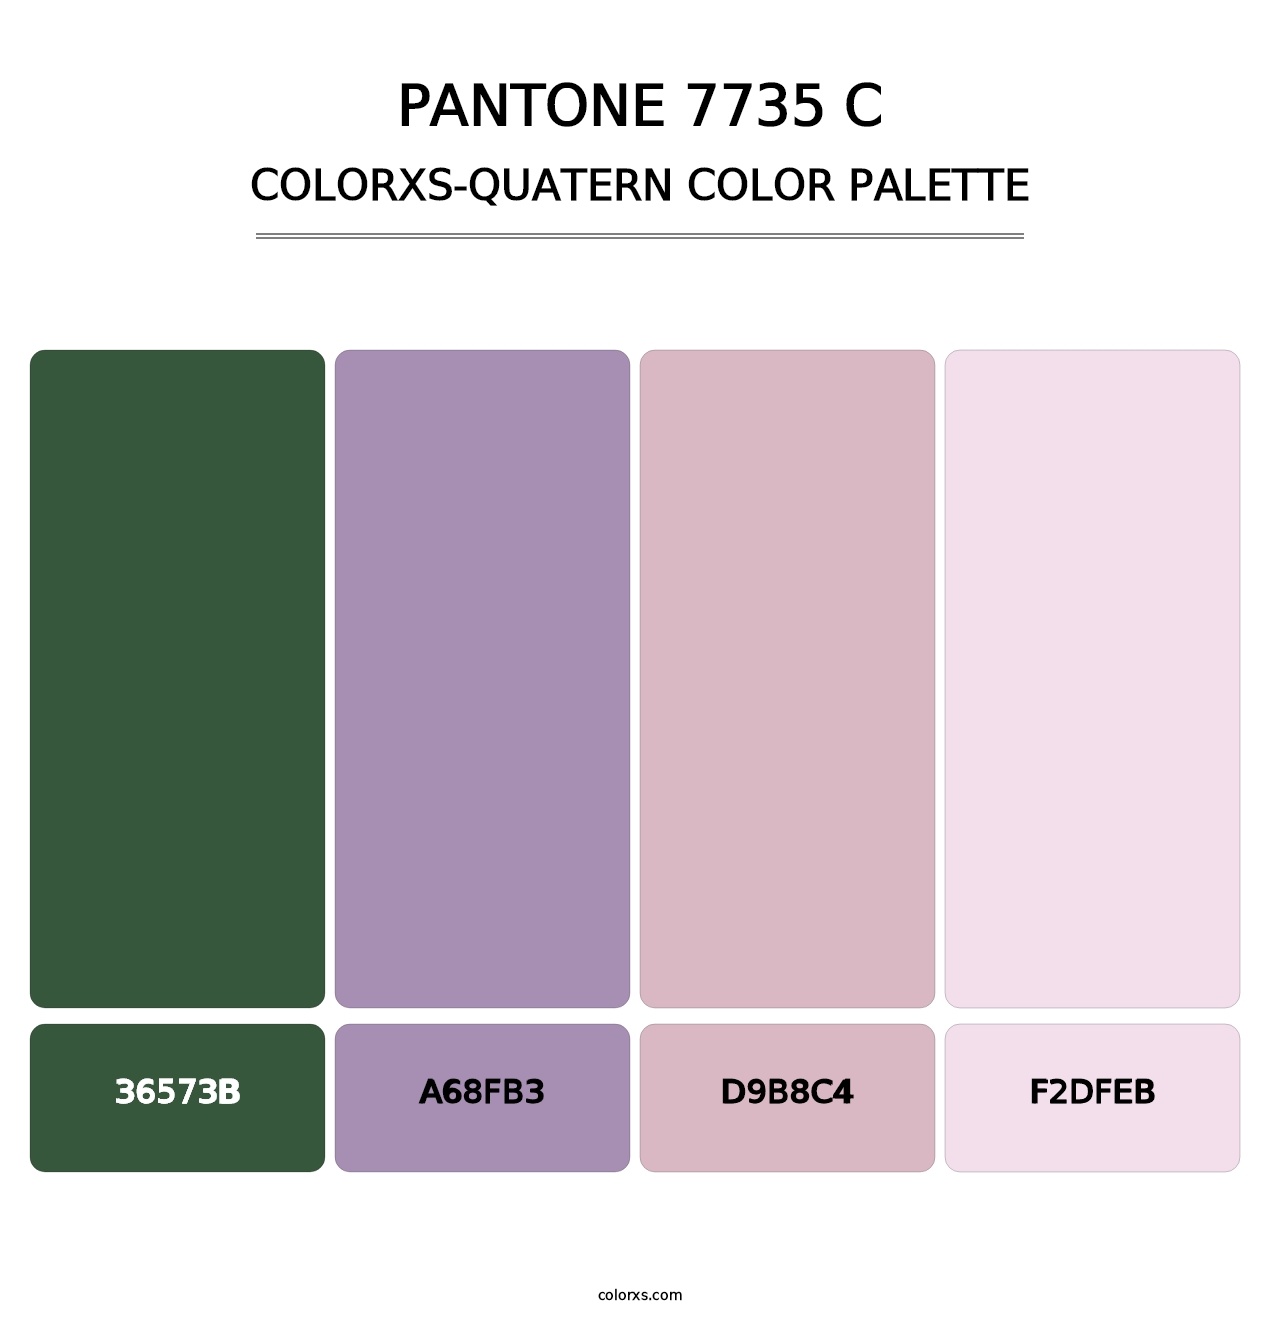 PANTONE 7735 C - Colorxs Quatern Palette